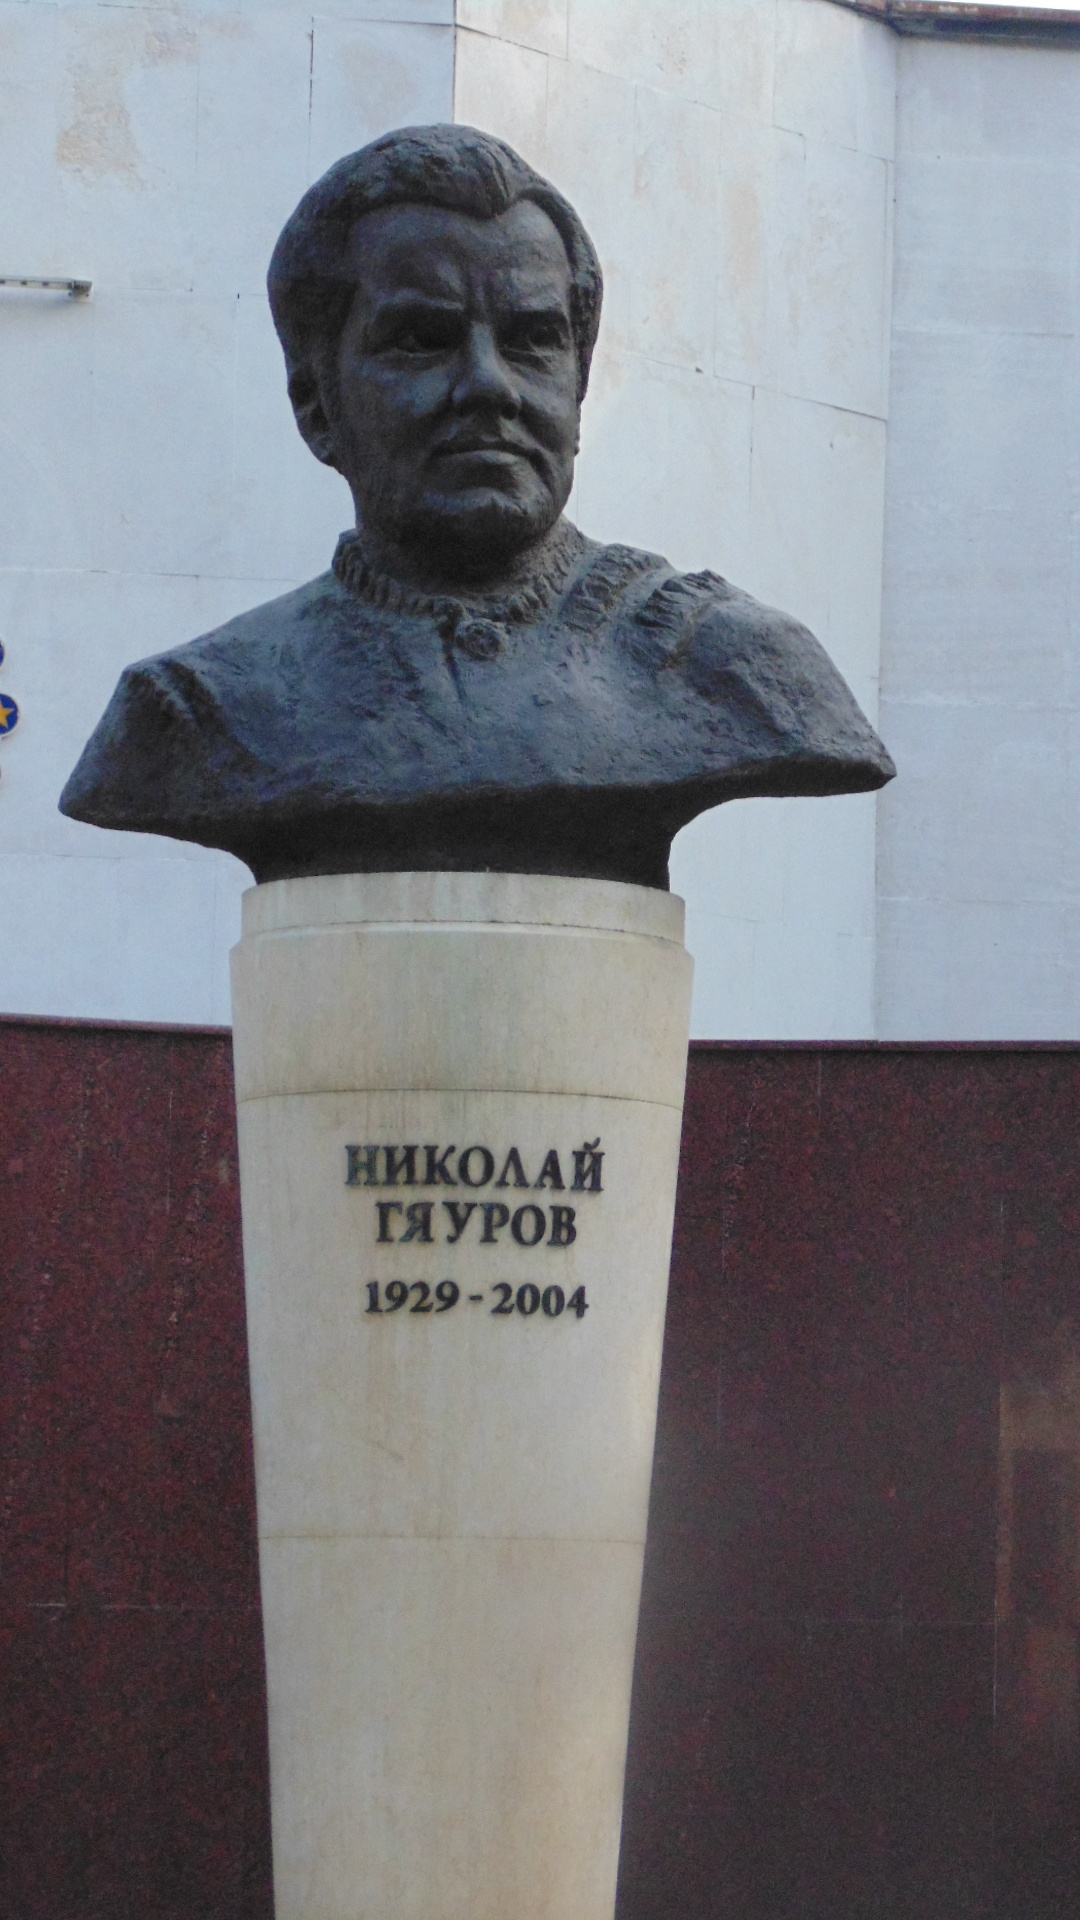 Николай Гяуров (Николај Гиауров) |